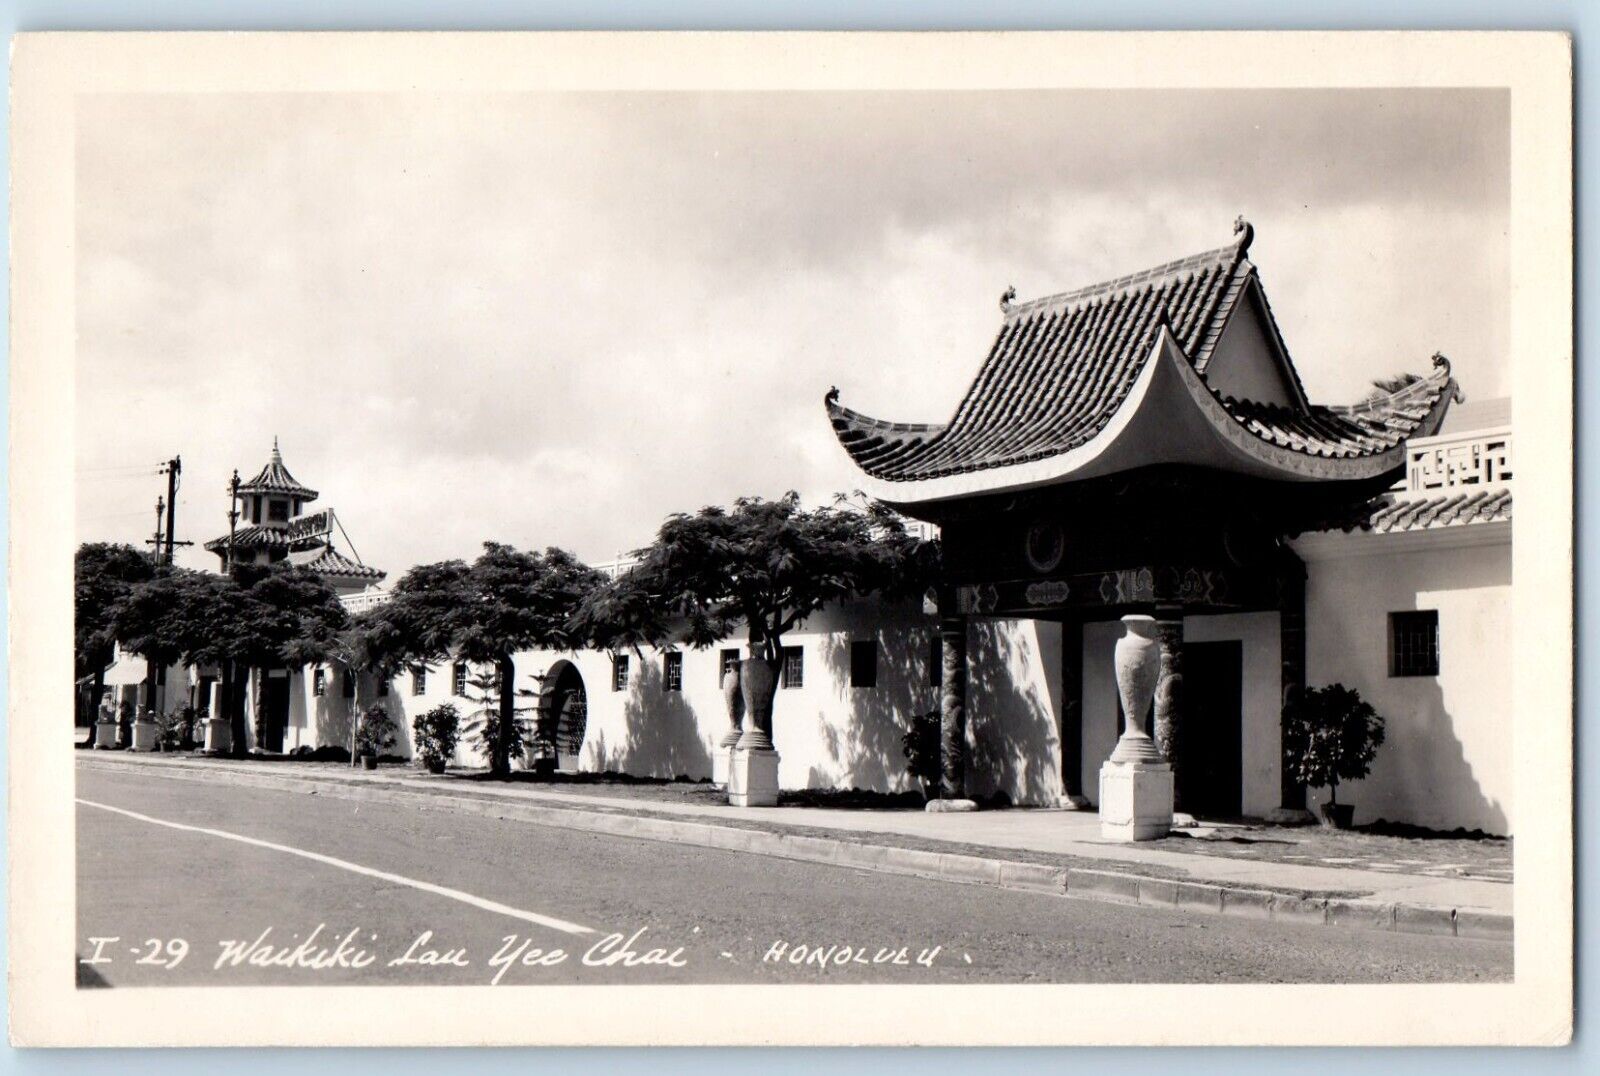 Honolulu Hawaii HI Postcard RPPC Photo Waikiki Lau Yee Chai c1940\'s Vintage